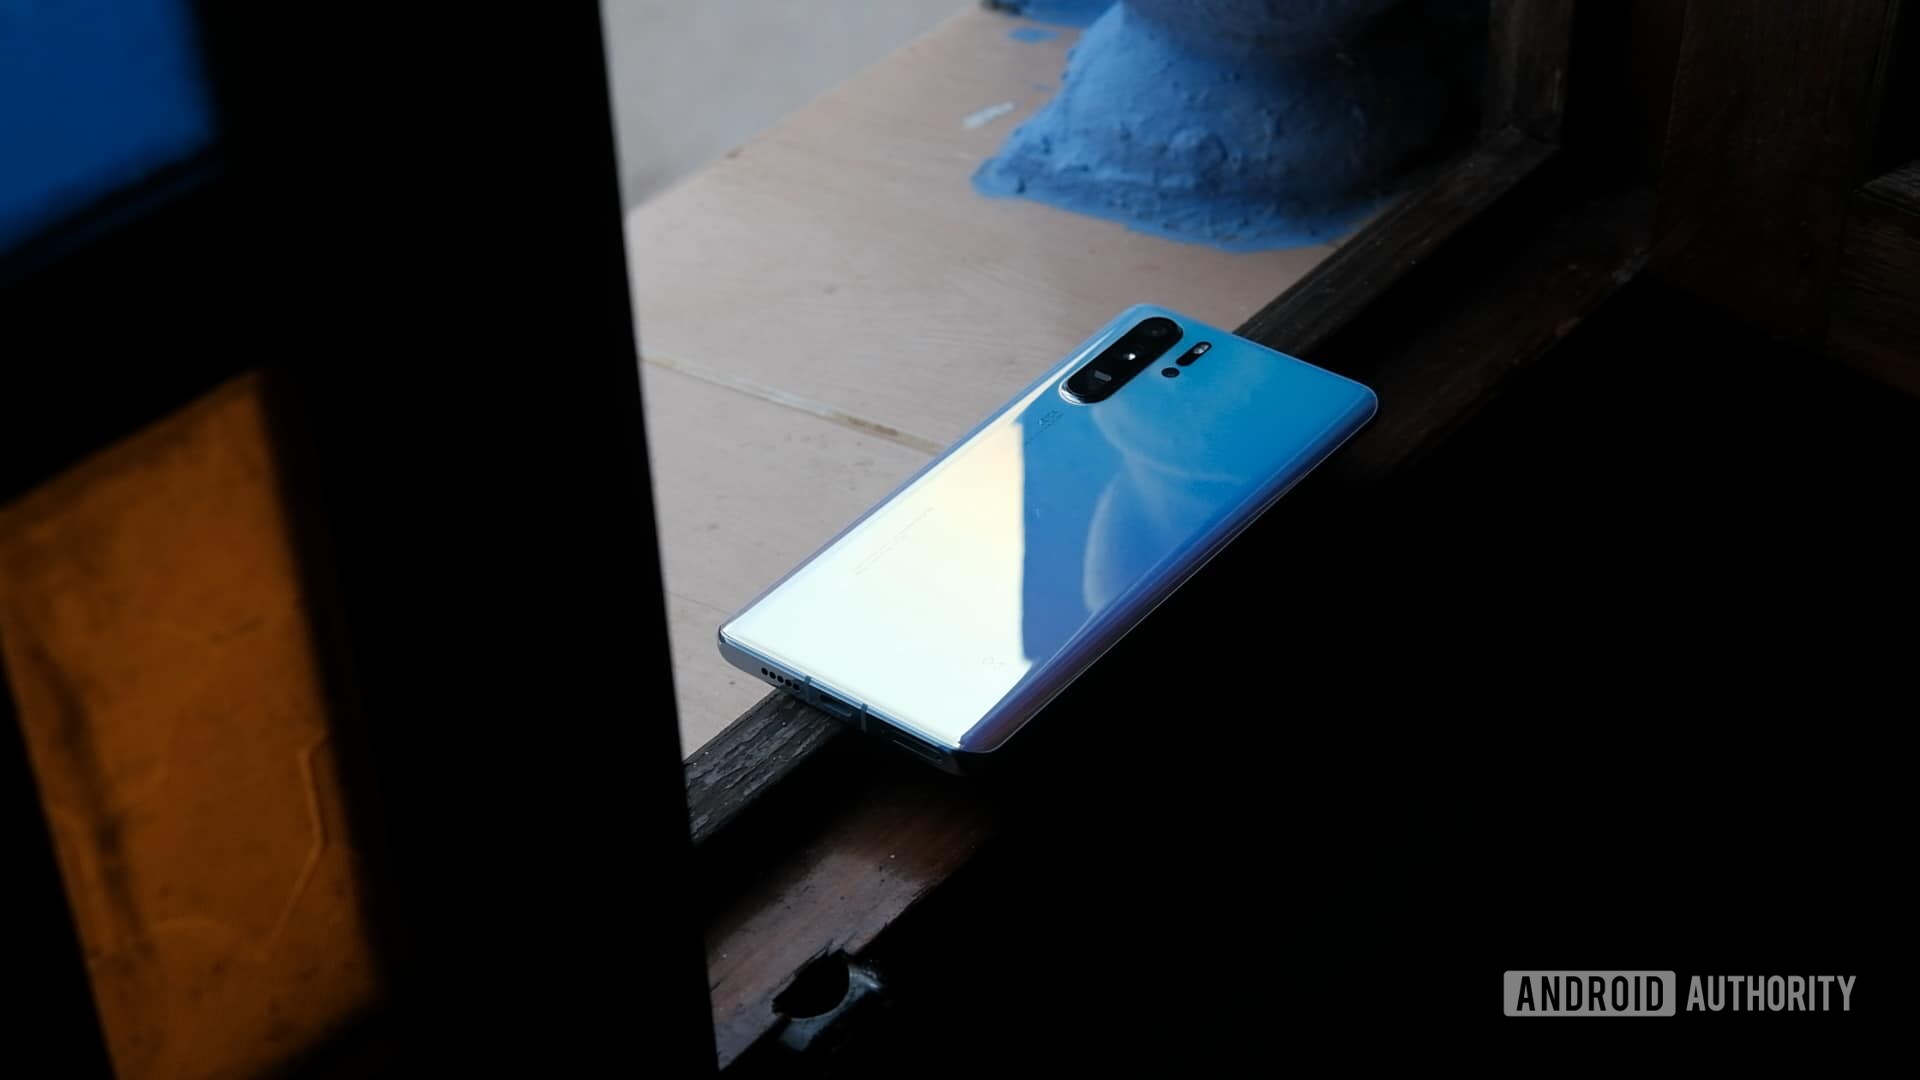 Huawei P30 Pro back on windowsill